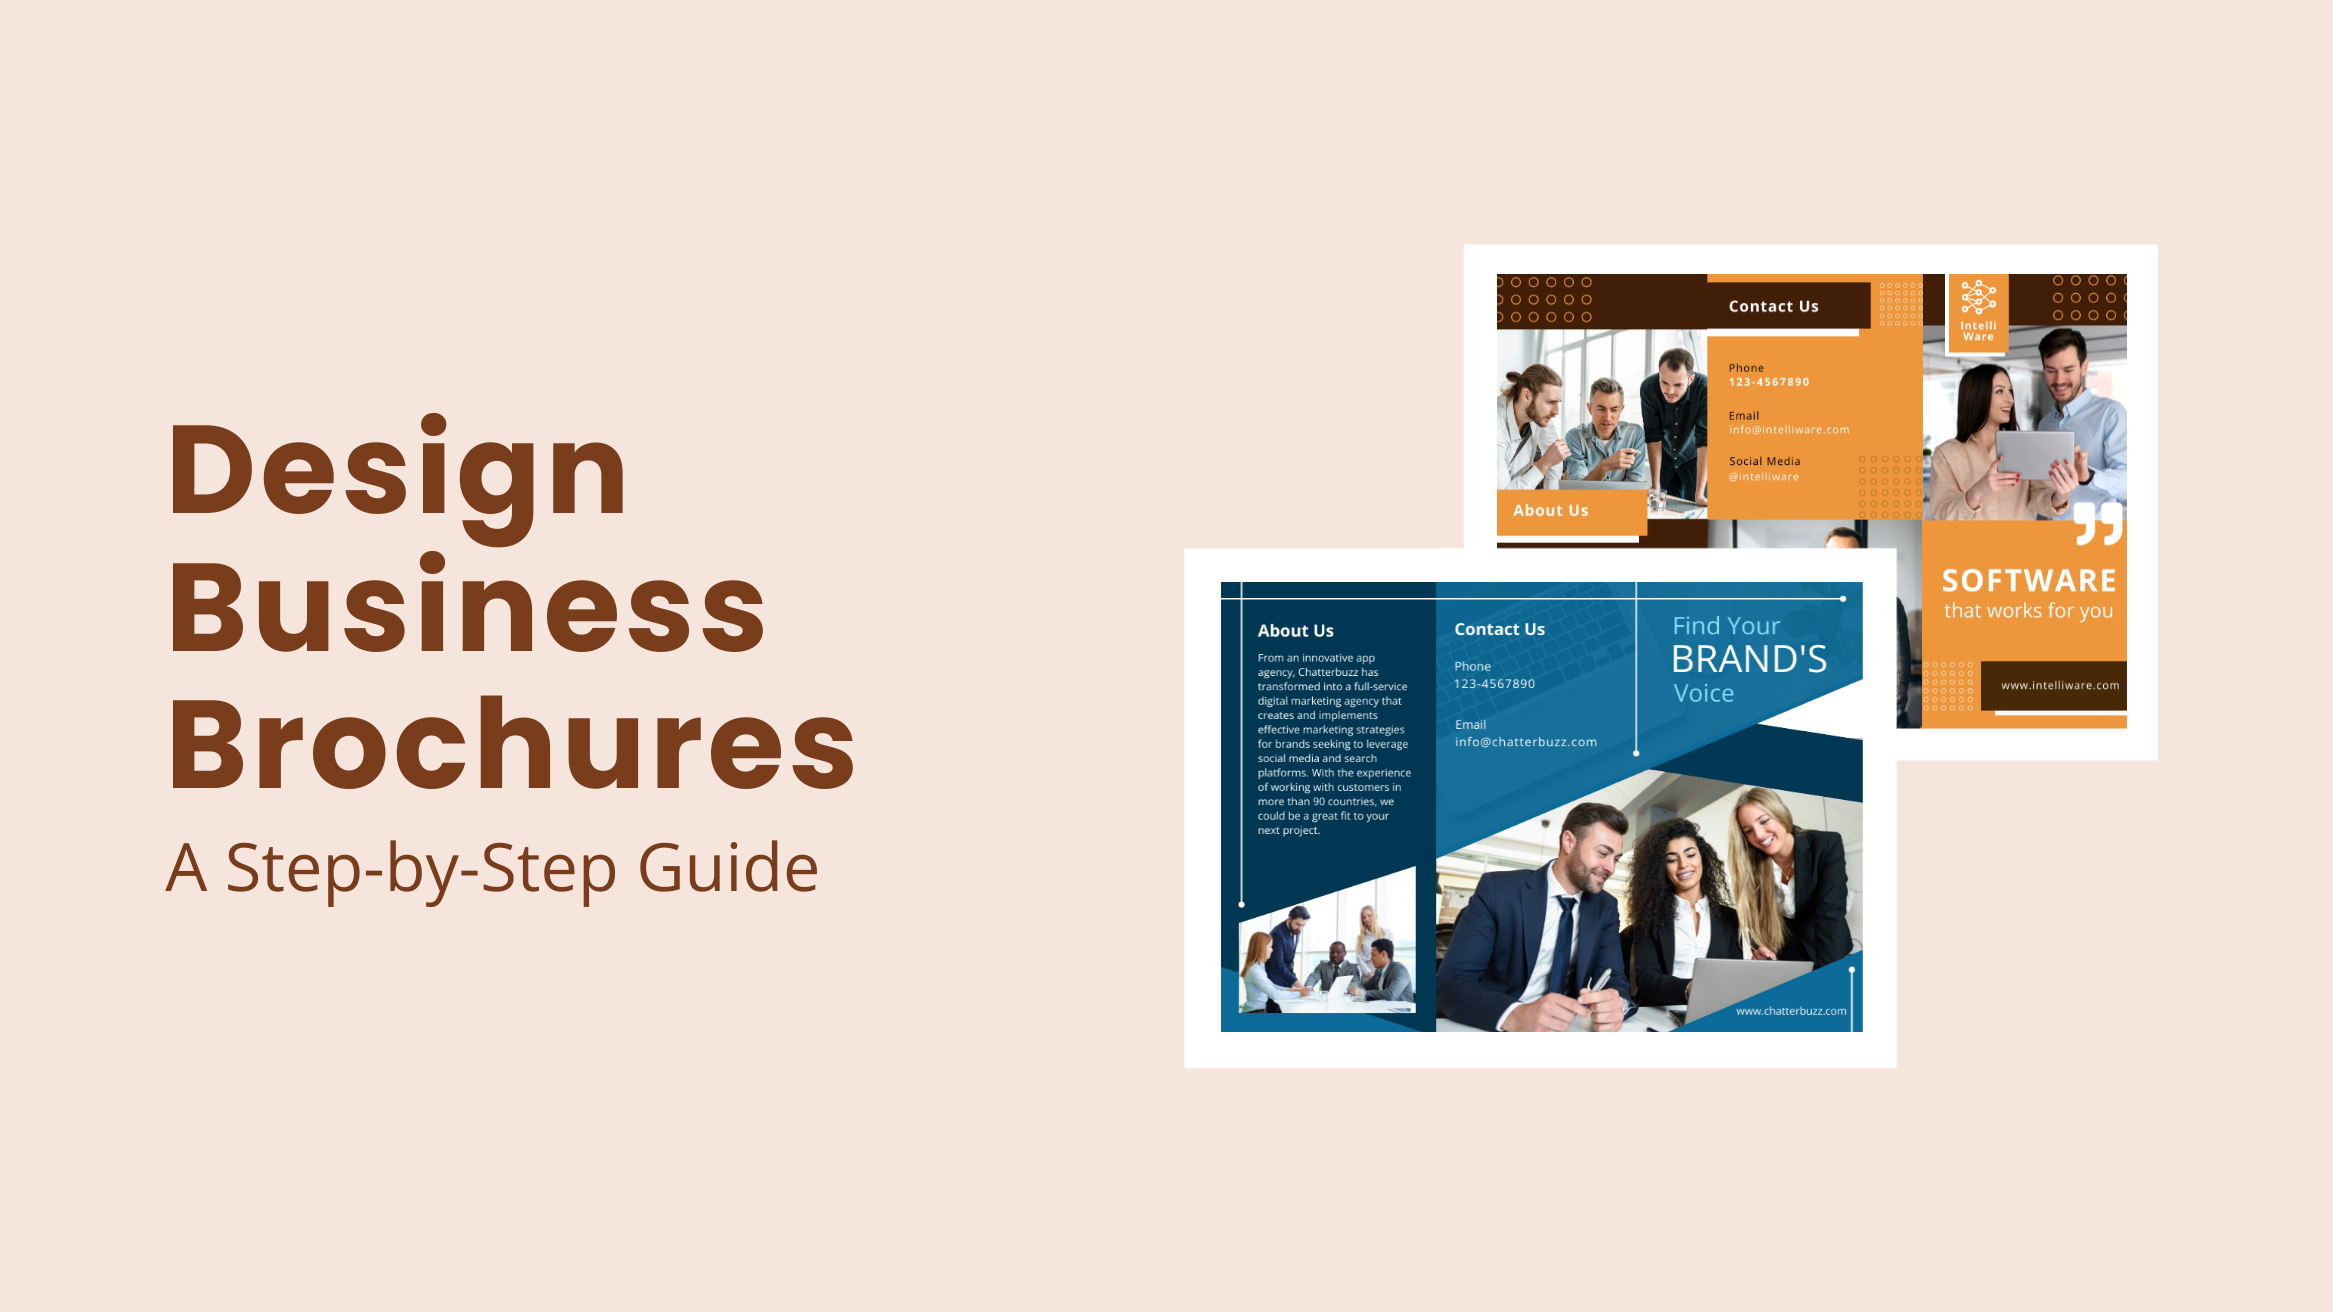 Design Business Brochures